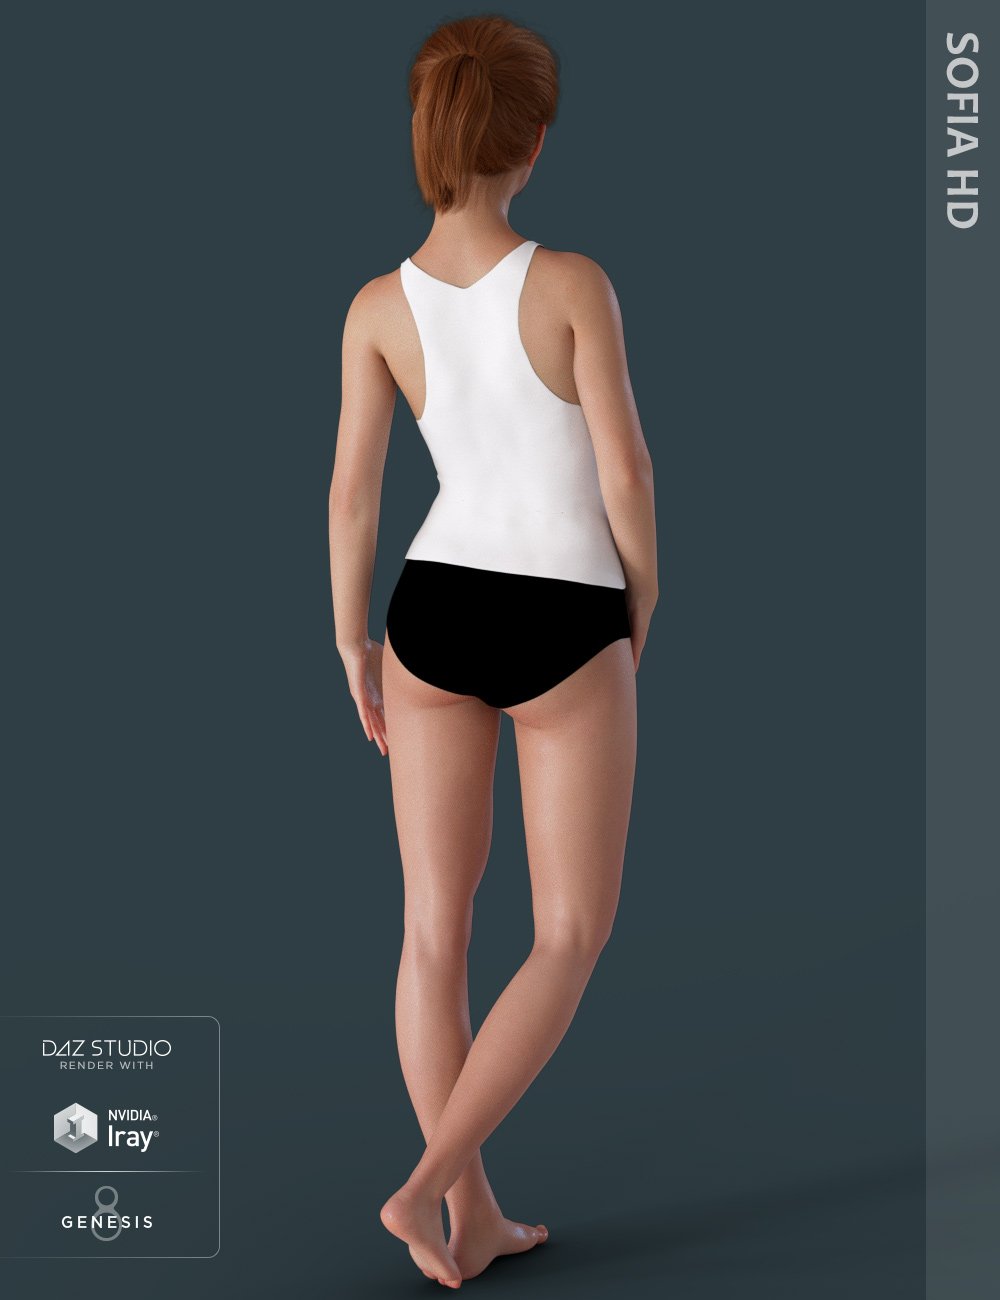 Sofia HD for Teen Jane 8 by: maelwenn, 3D Models by Daz 3D